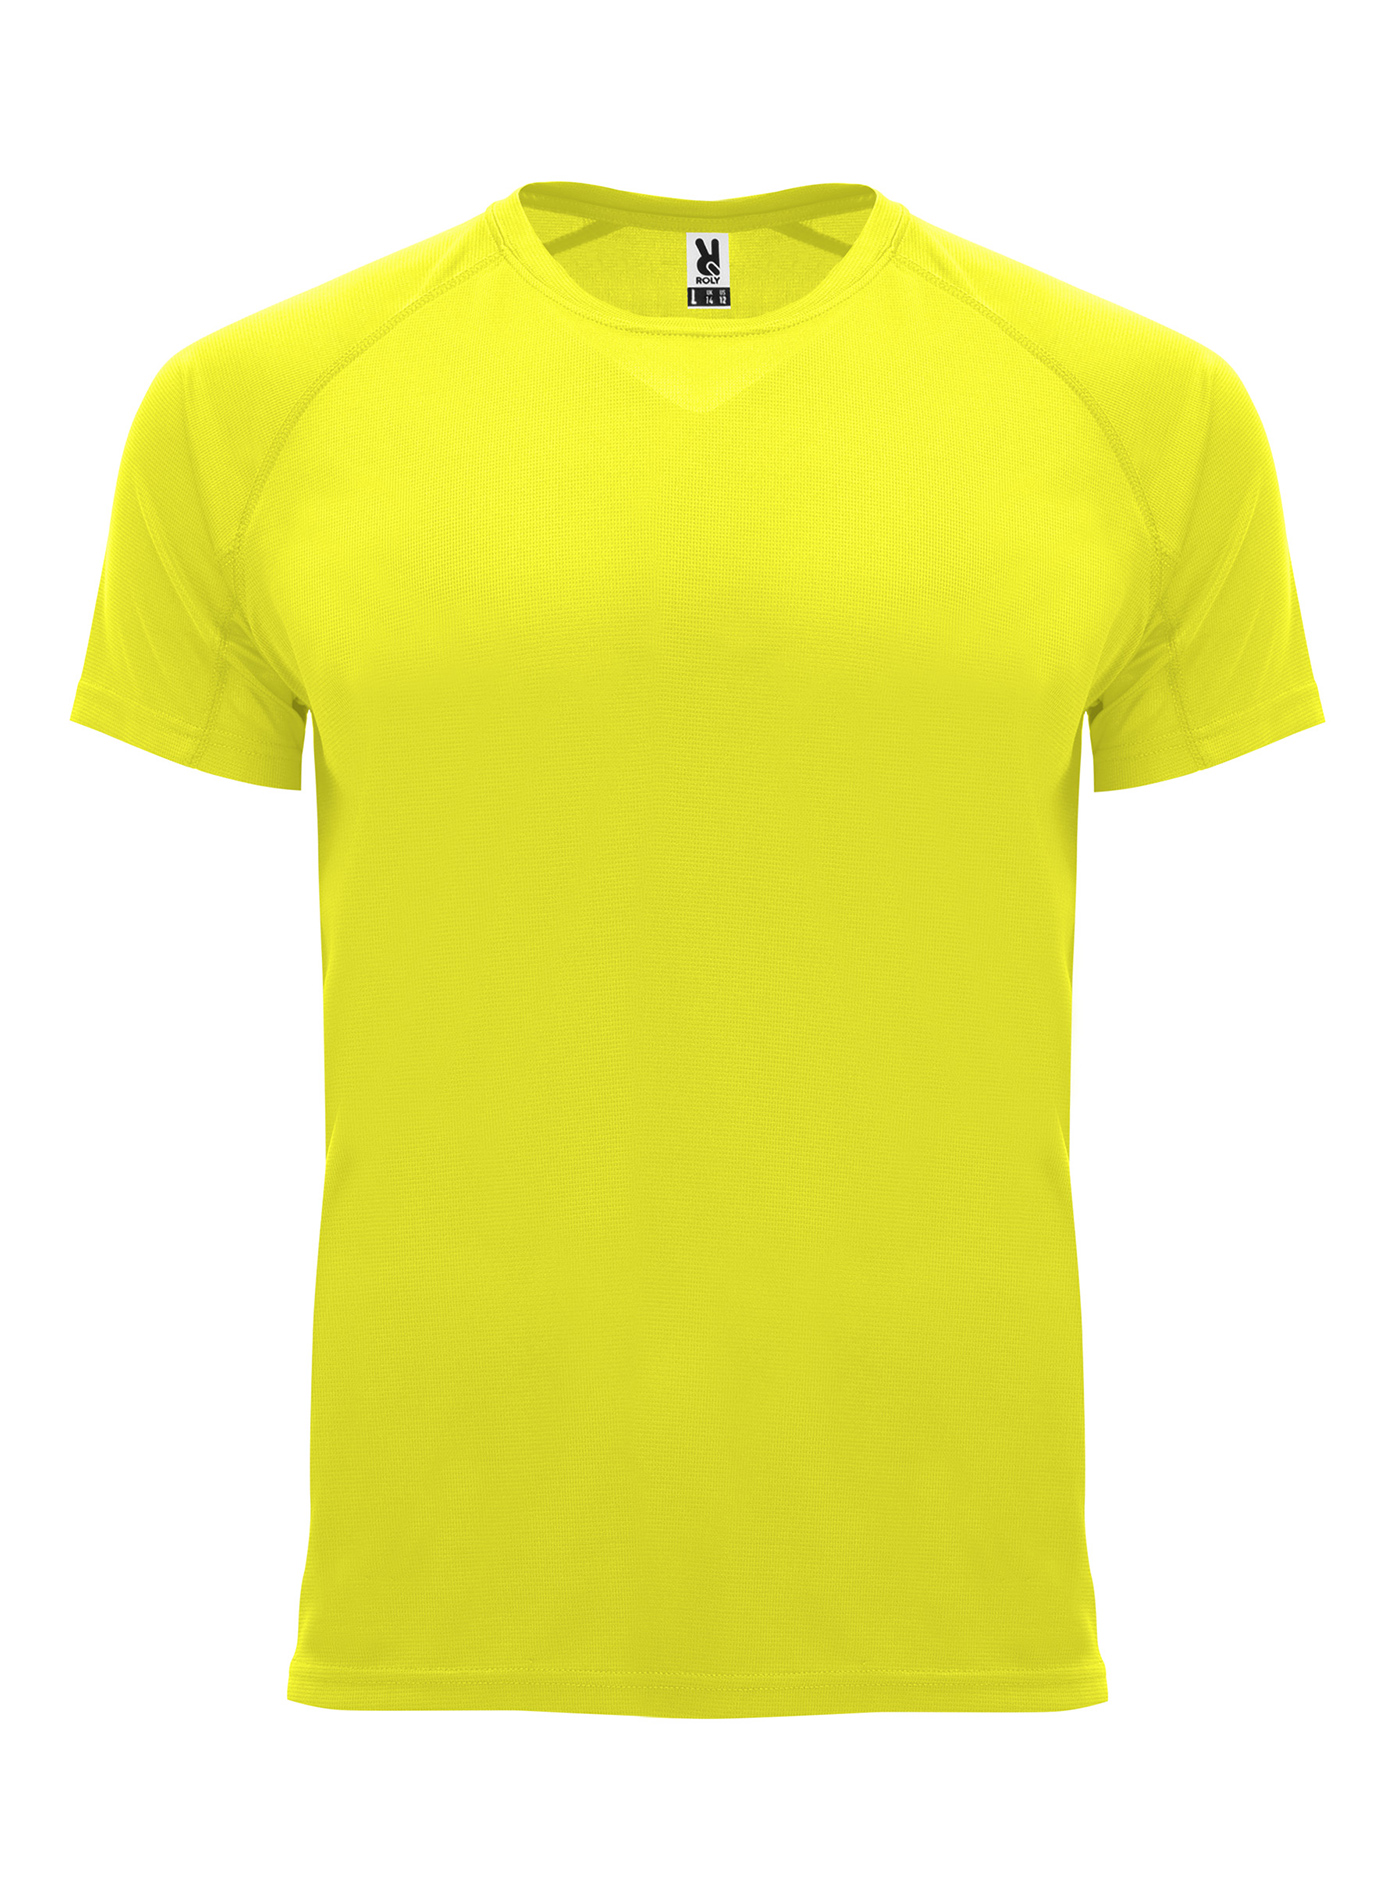 Pánské sportovní tričko Roly Bahrain - Neonově žlutá XL